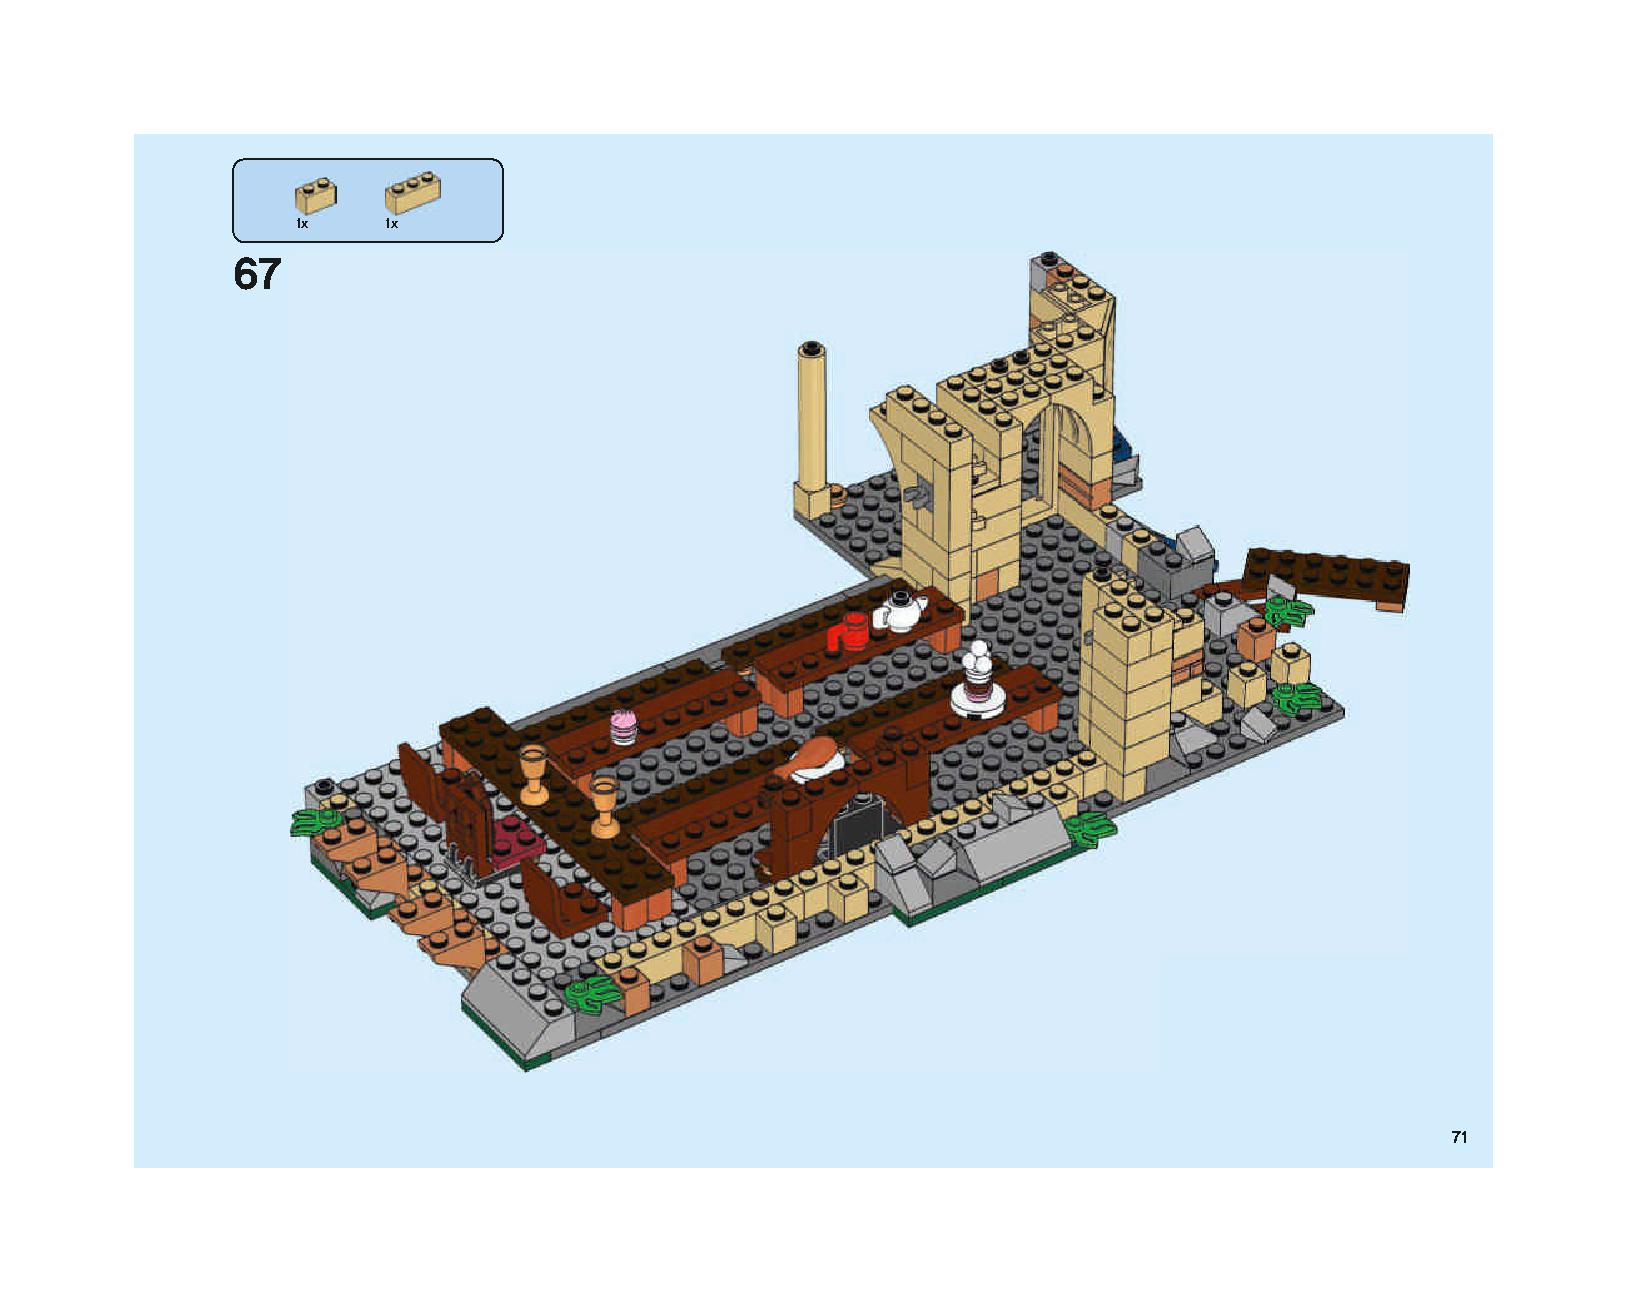 ホグワーツの大広間 75954 レゴの商品情報 レゴの説明書・組立方法 71 page